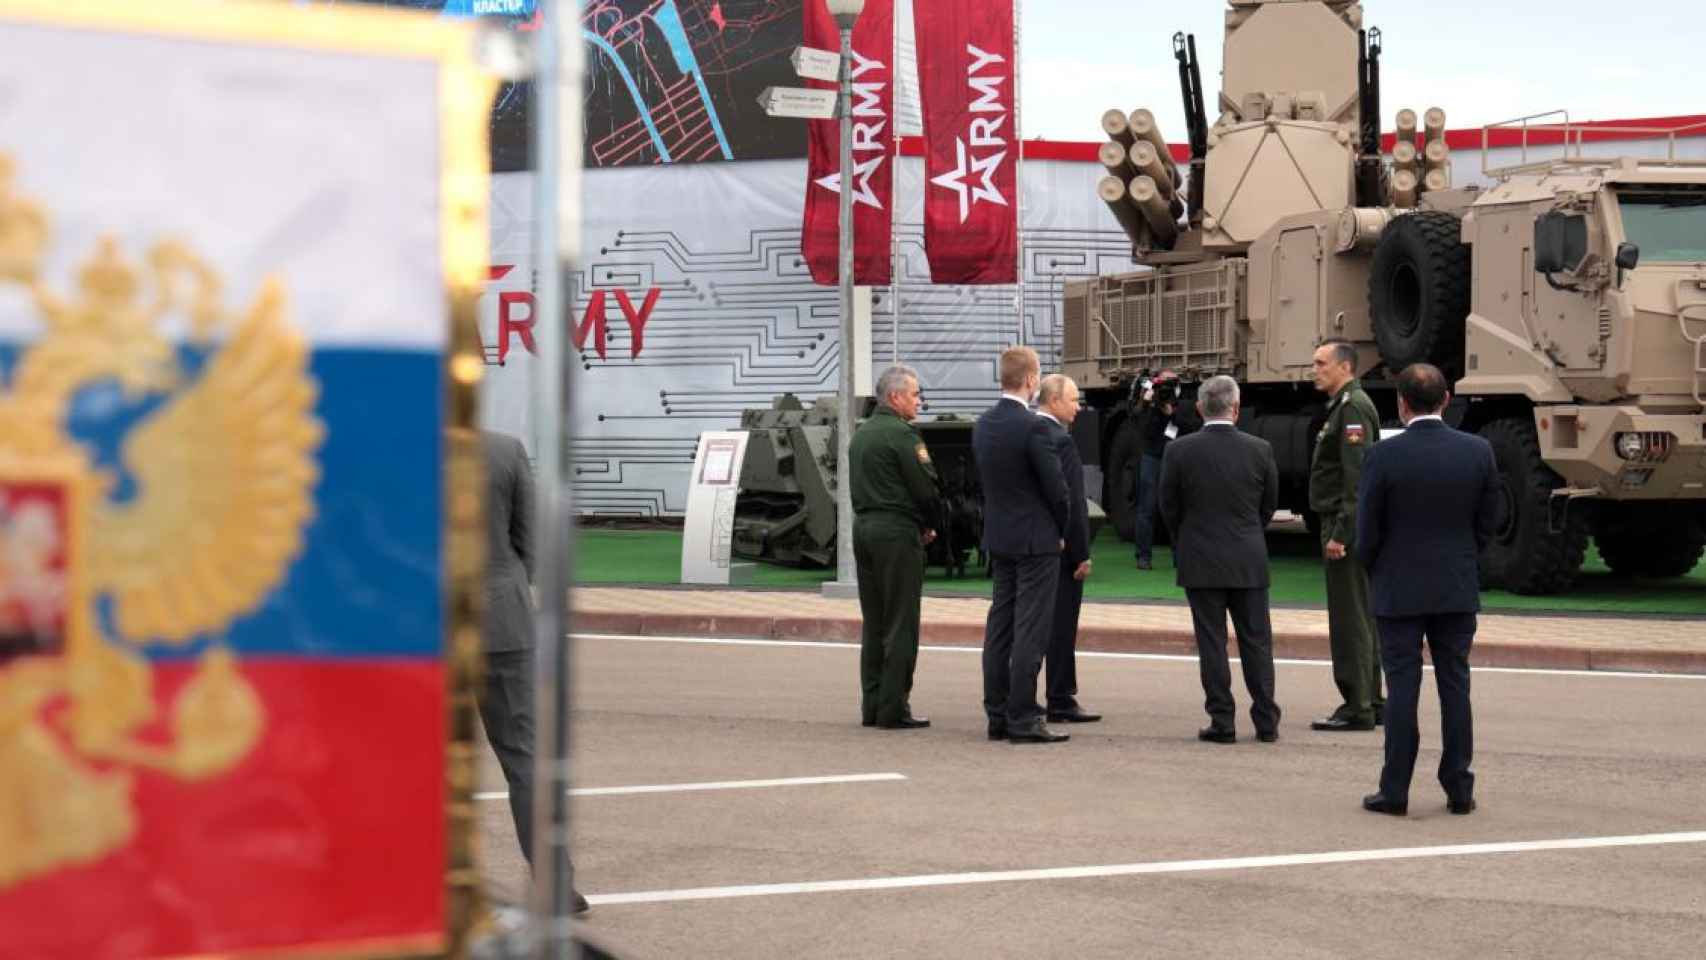 El presidente ruso, Vladimir Putin, inspecciona material del Ejército / KREMLIN